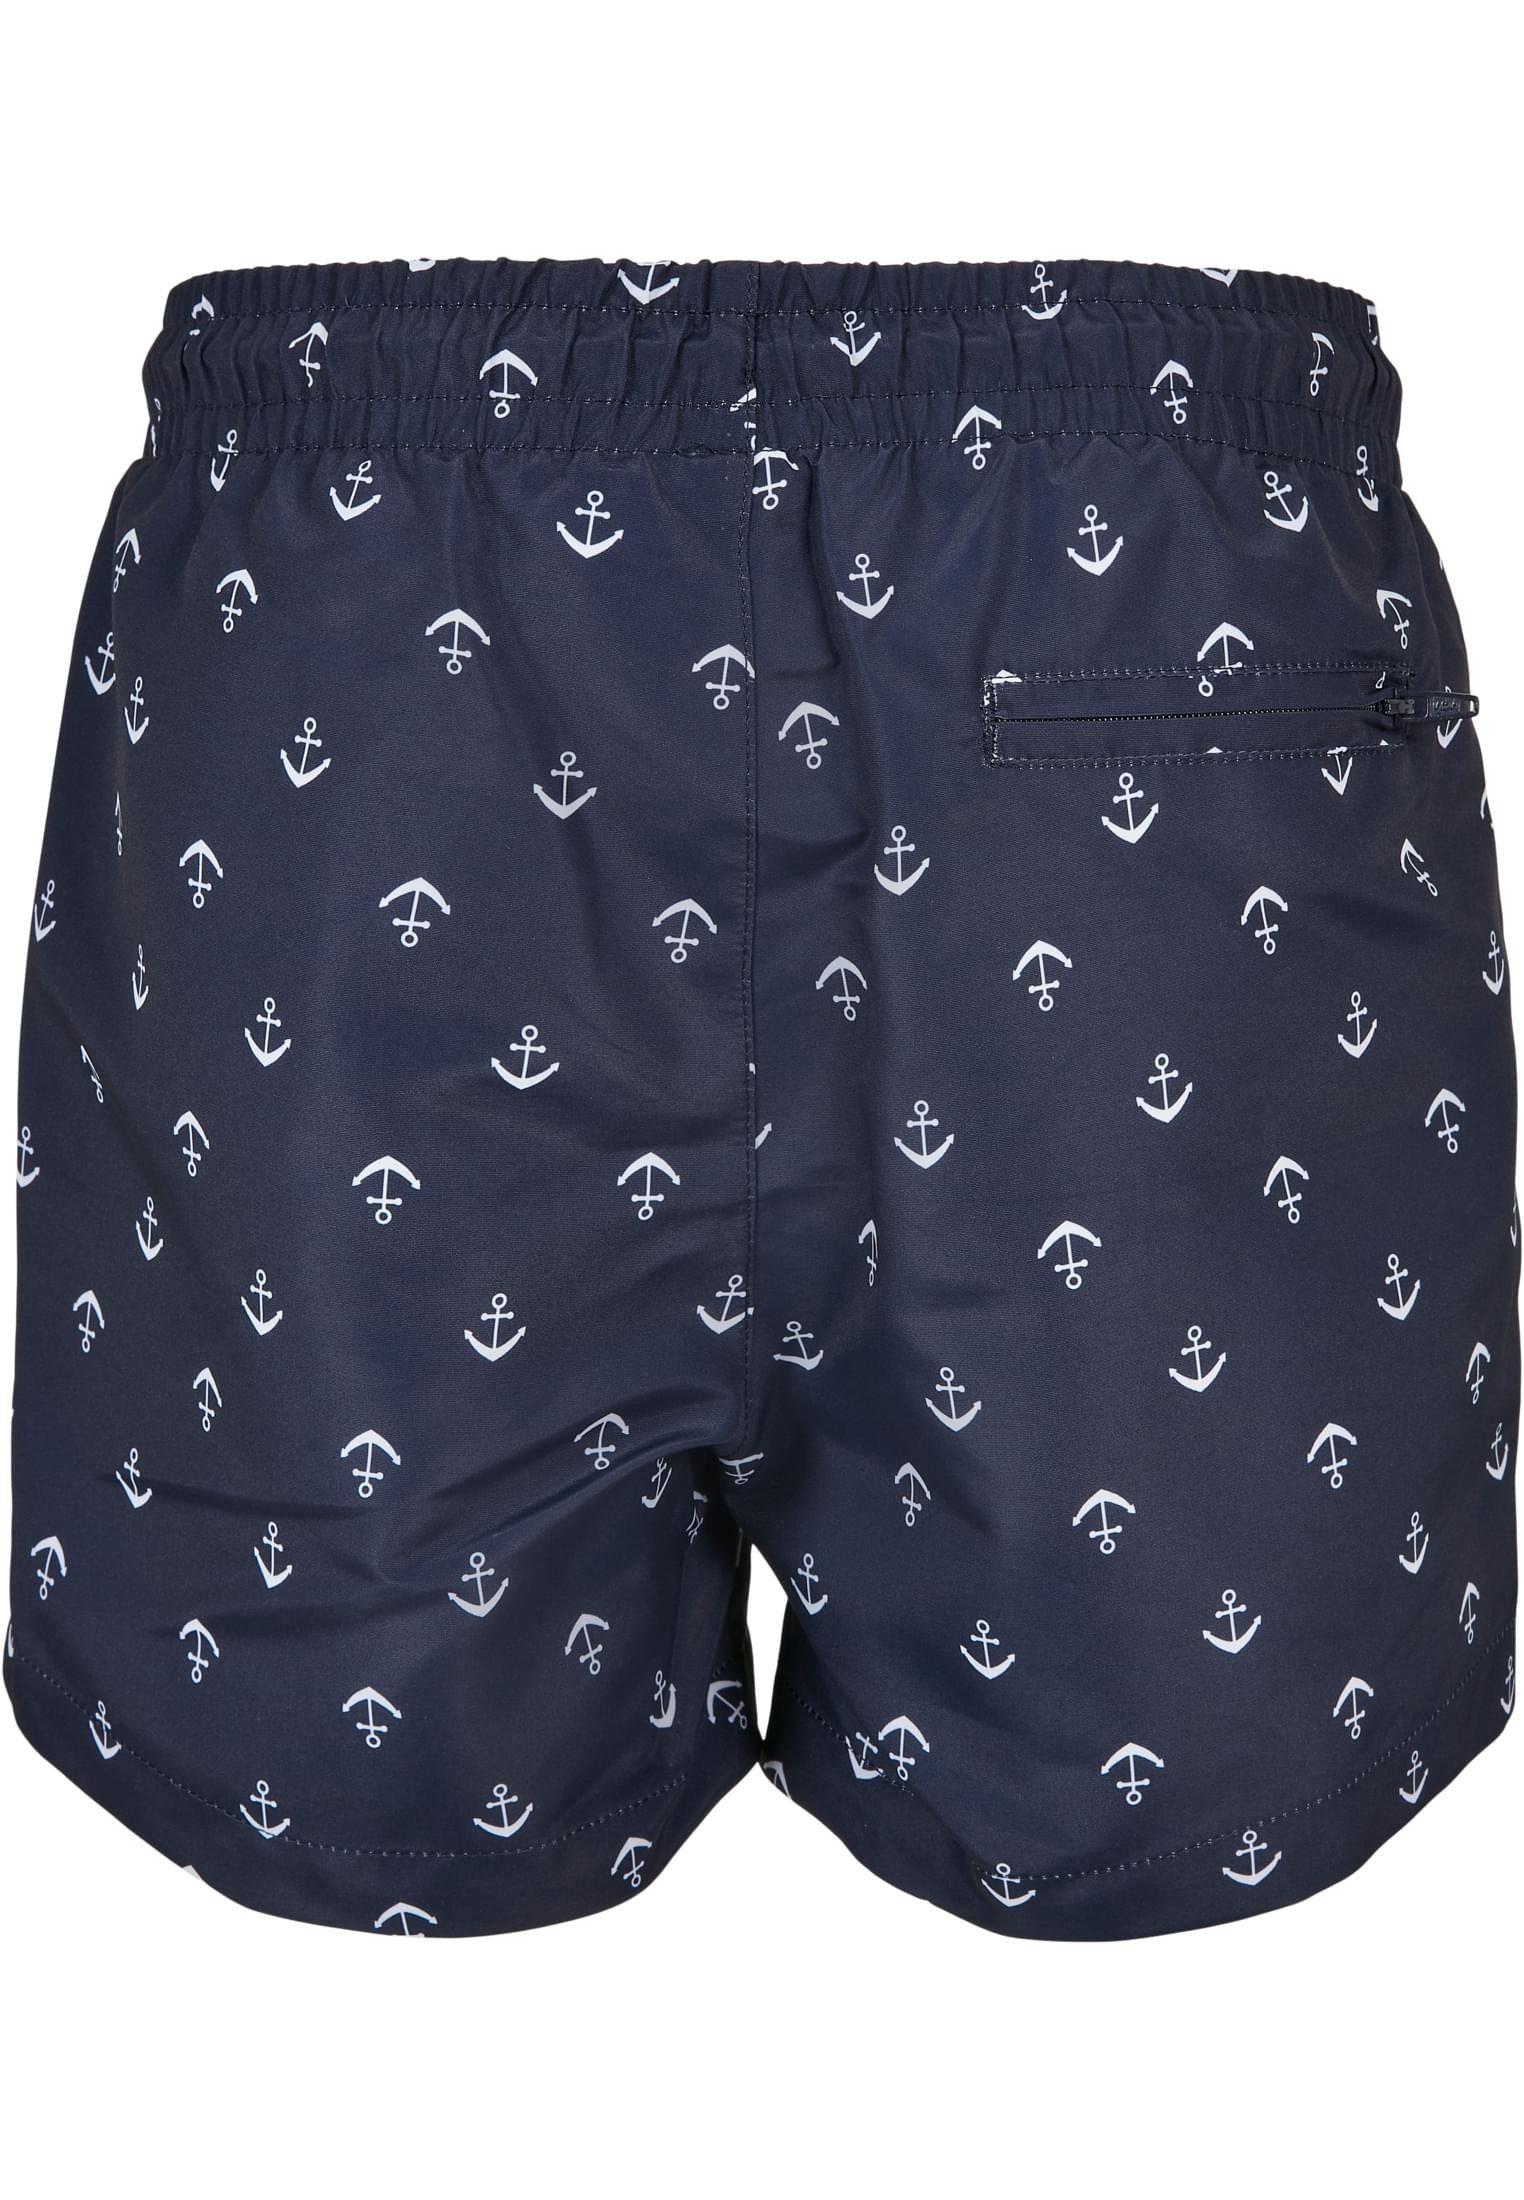 URBAN CLASSICS Badeshorts Pattern anchor/navy Herren Boys Swim Shorts